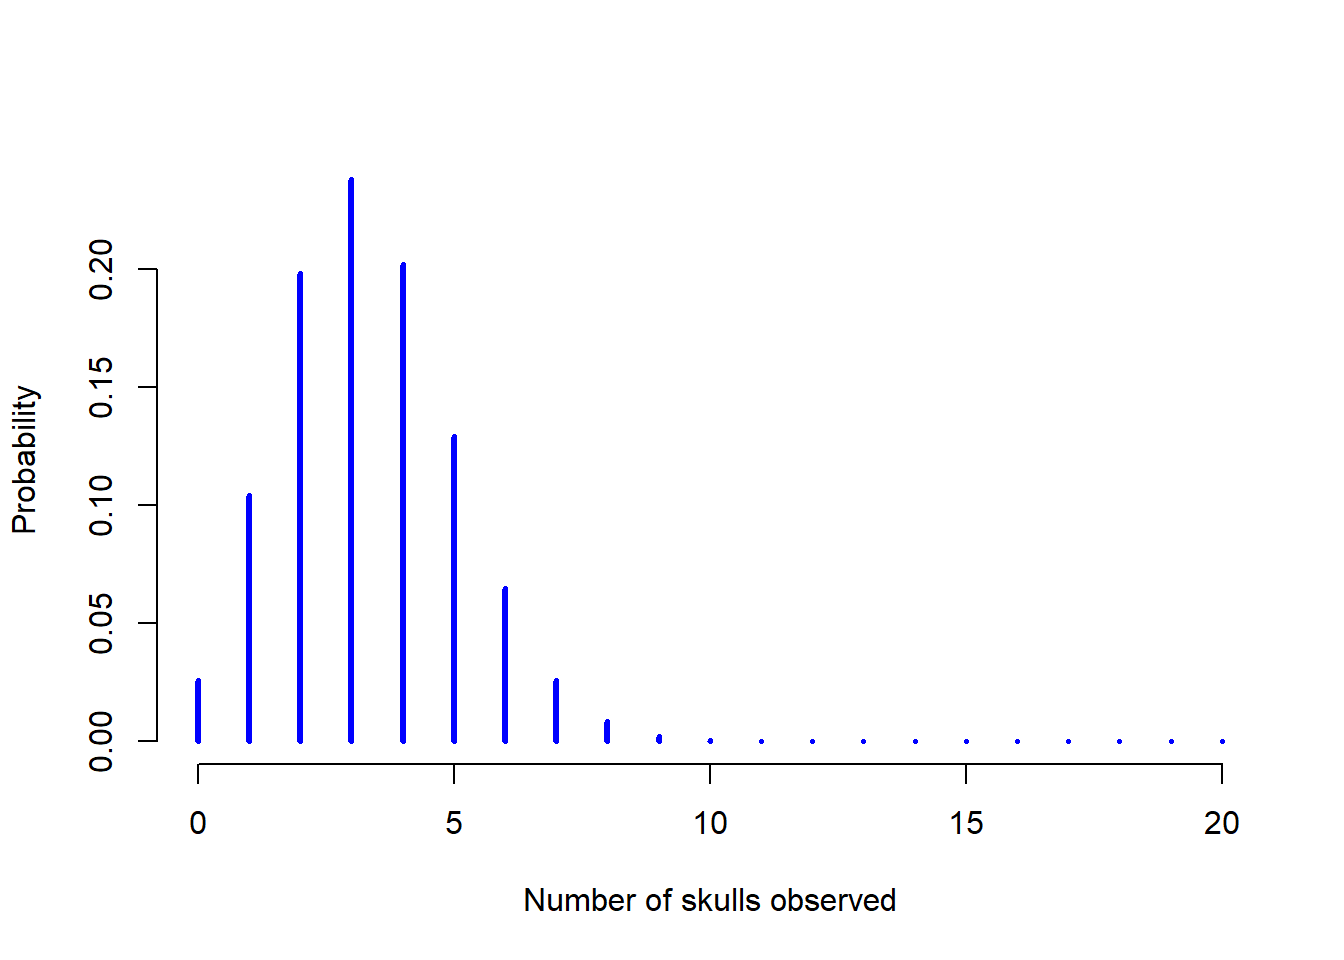  La distribución binomial con parámetro de tamaño de $N=20$ y una probabilidad de éxito de $theta = 1/6$. Cada barra vertical representa la probabilidad de un resultado específico (un valor posible de $X$). Ya que esta es una distribución de probabilidad, cada una de las probabilidades debe ser un número entre 0 y 1, y la altura de las barras también deben sumar 1.